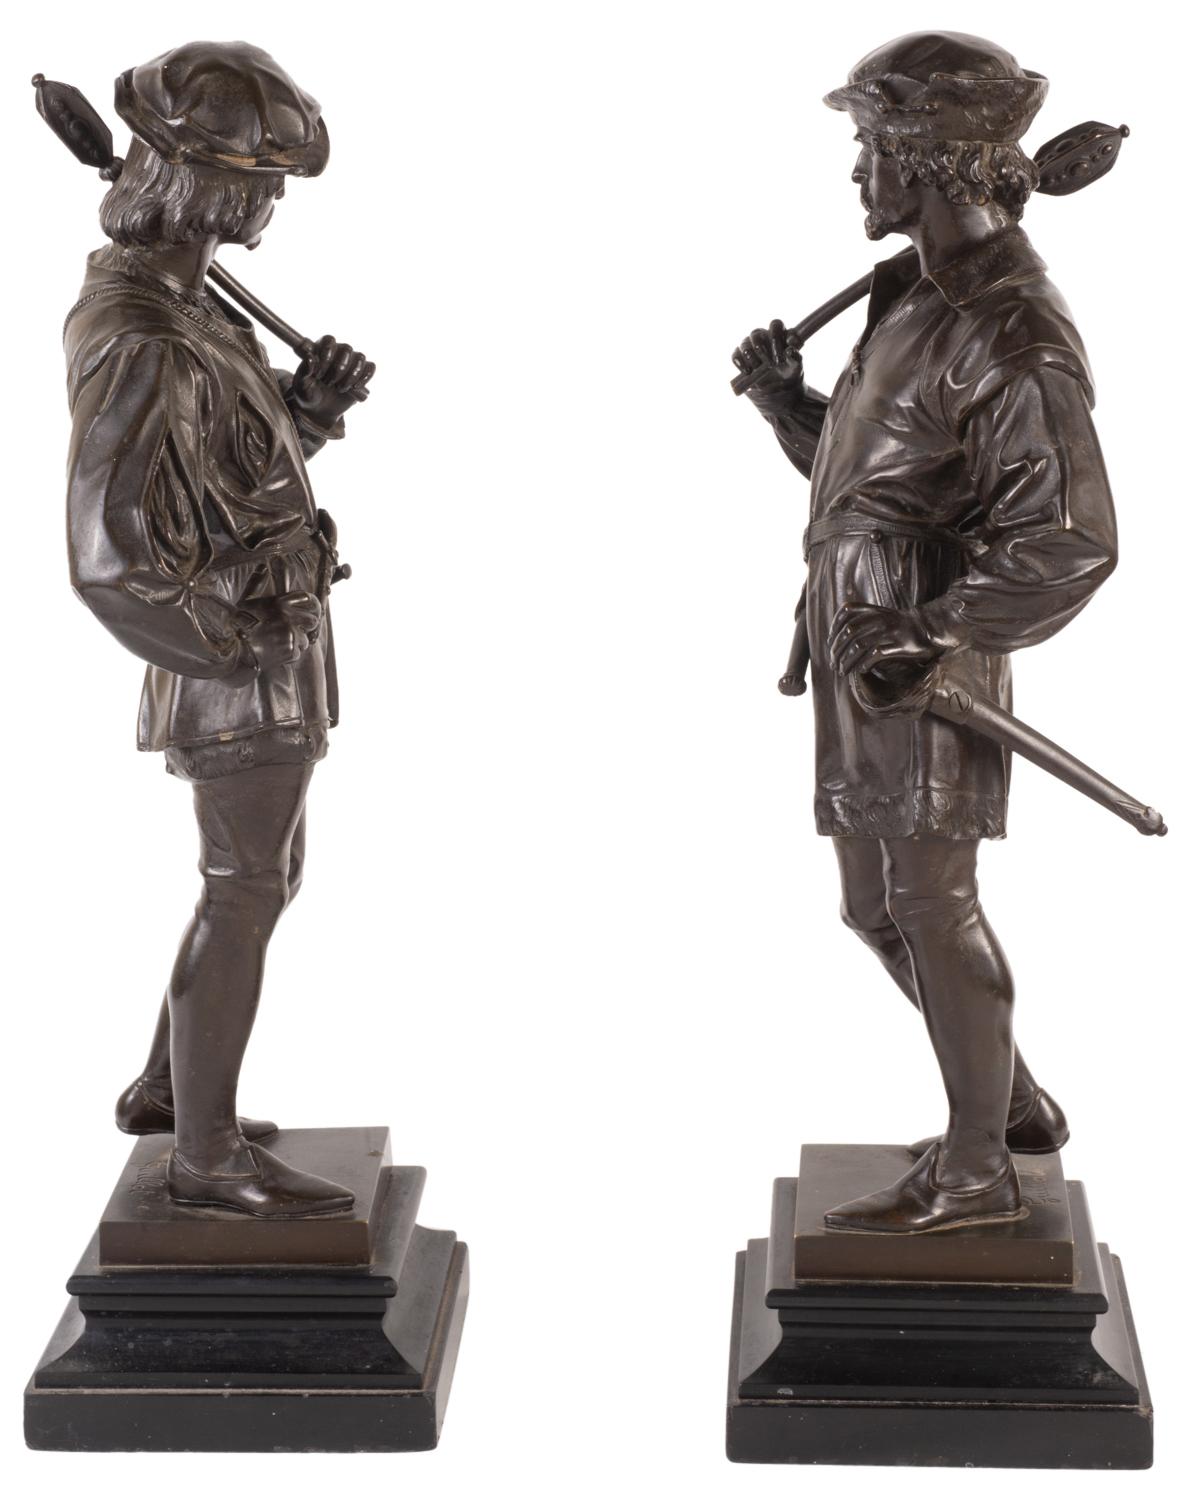 Paire d'agréables statues de bronze françaises du XIXe siècle représentant des chasseurs de style Renaissance, signées. Guillot (français, 1865-1911).